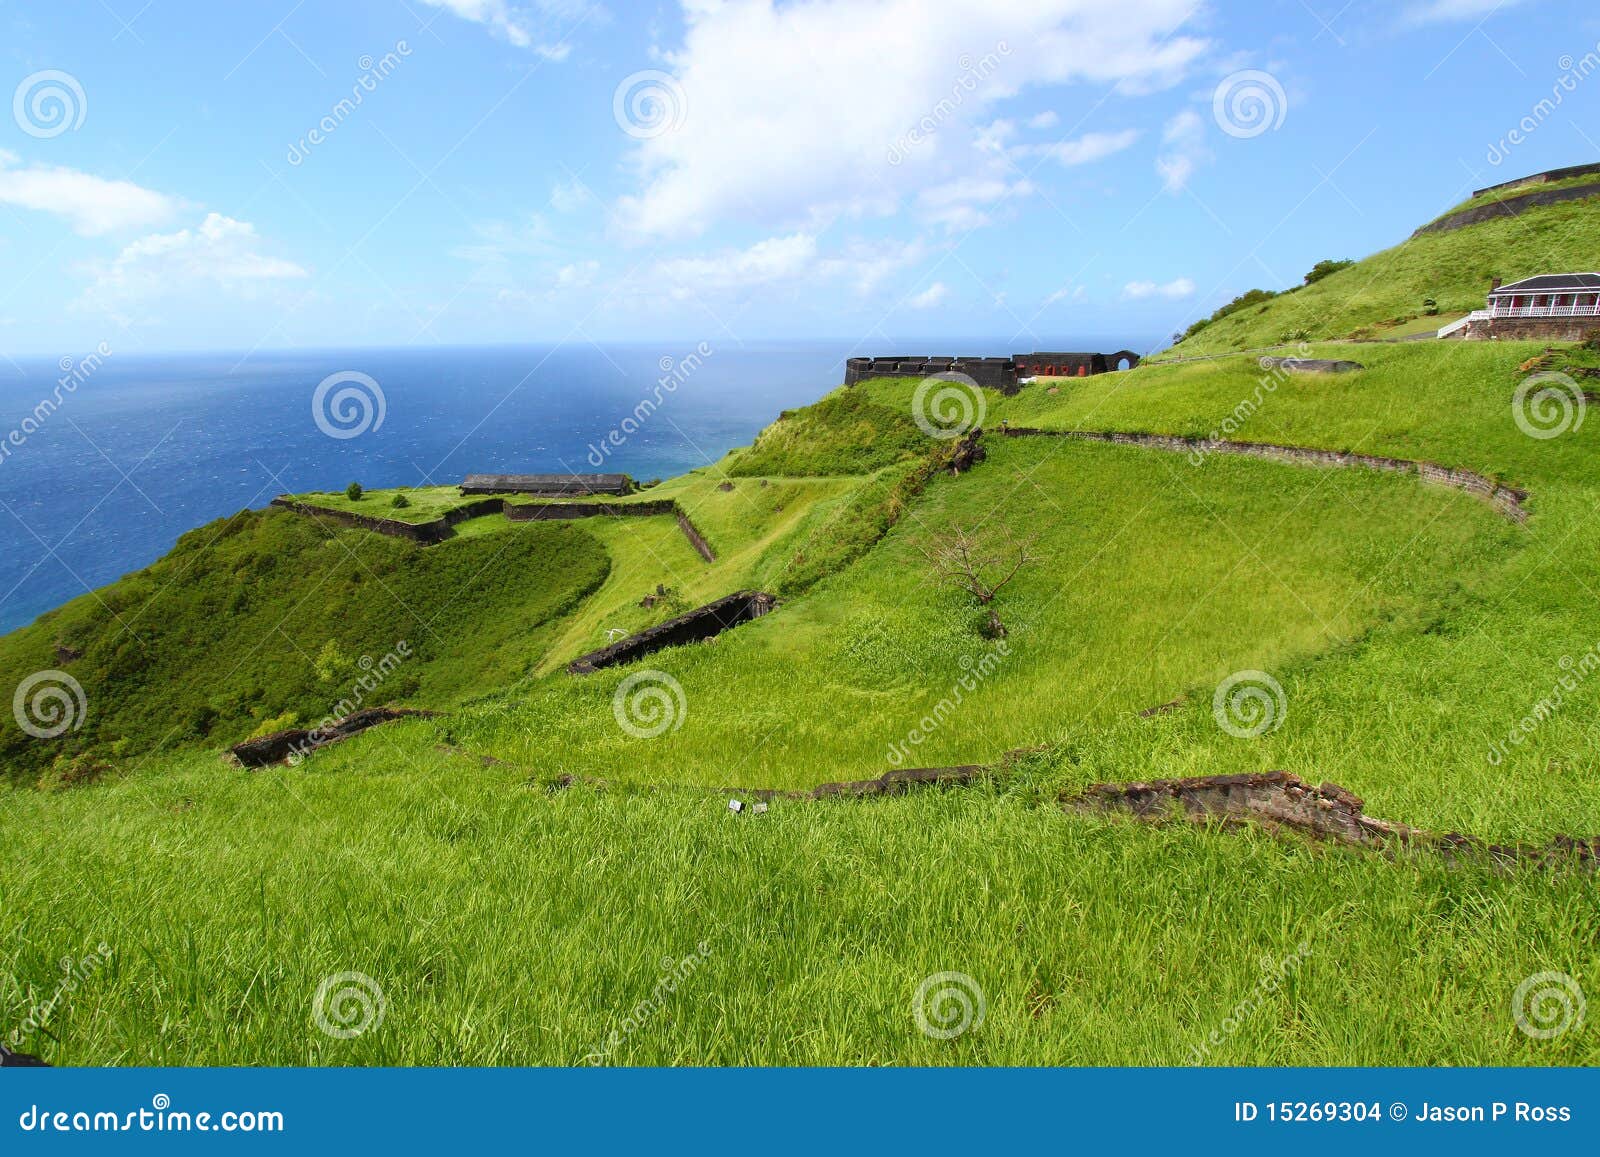 Fortaleza de la colina del azufre - St San Cristobal. La costa costa en la fortaleza de la colina del azufre en la isla caribeña del santo San Cristobal.